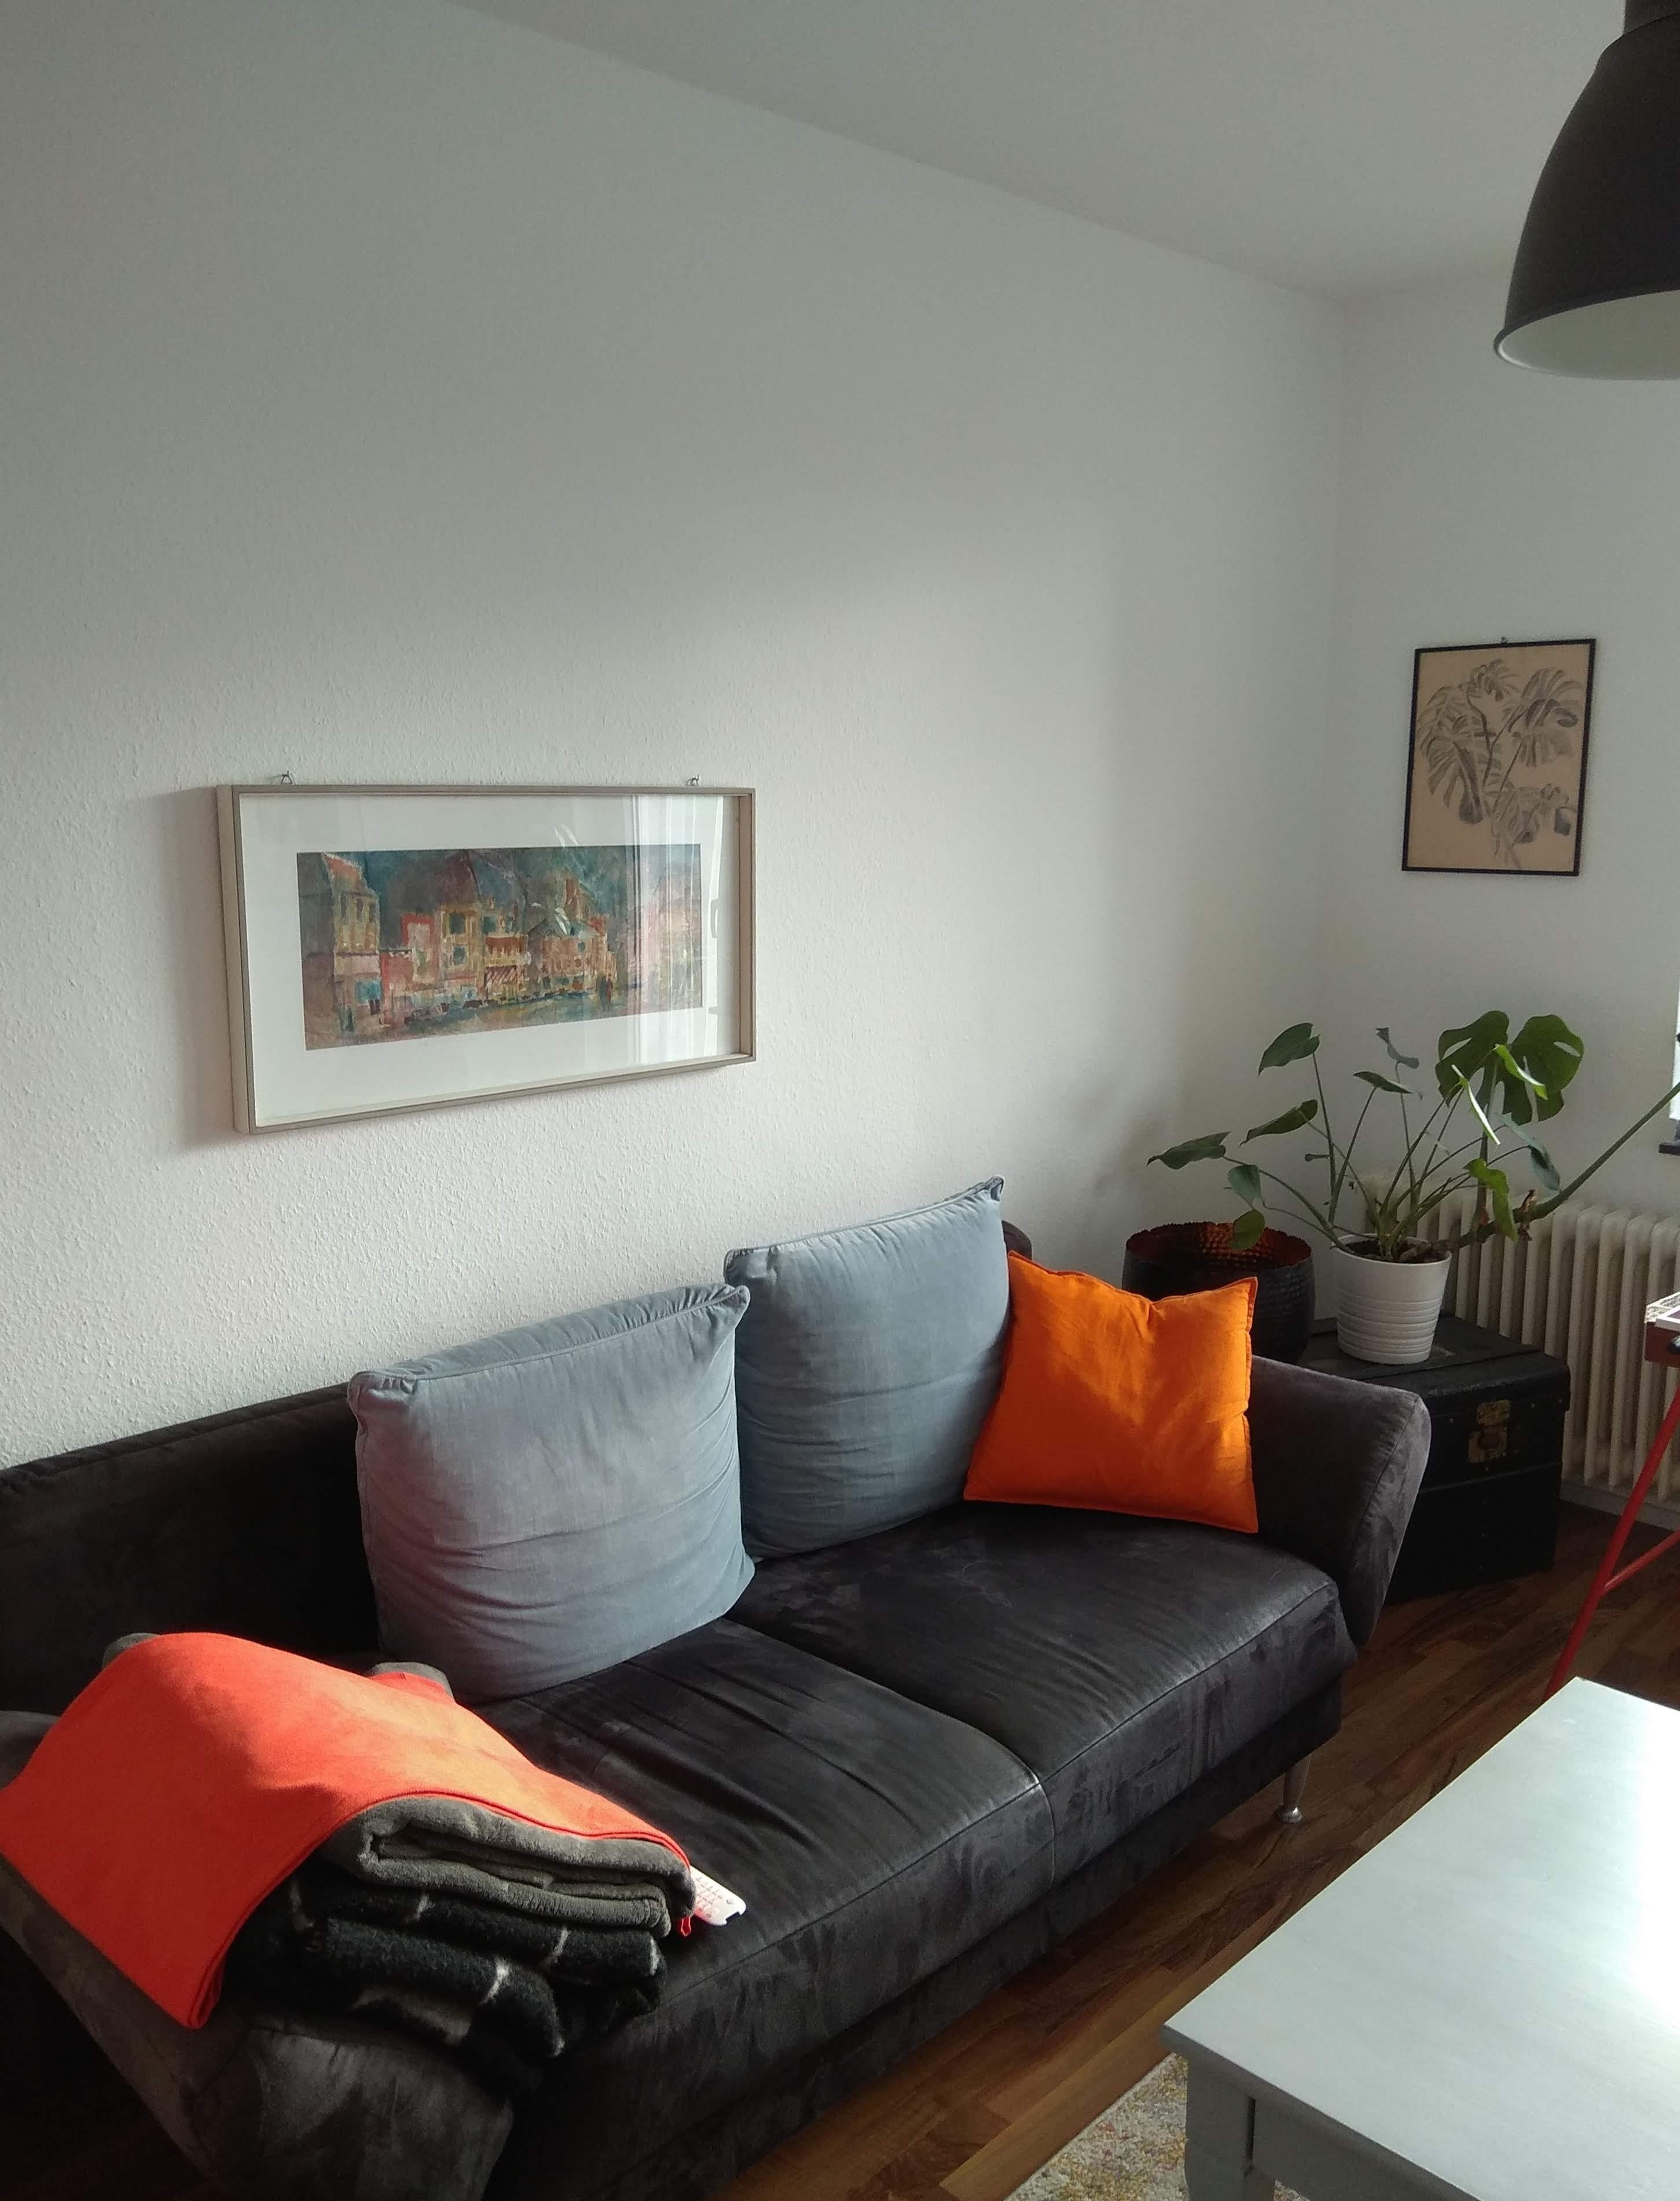 #wanddeko #livingchallenge
Die Farben des Raumes sind an das Bild über der Couch angepasst. Beide aus Familienfeder